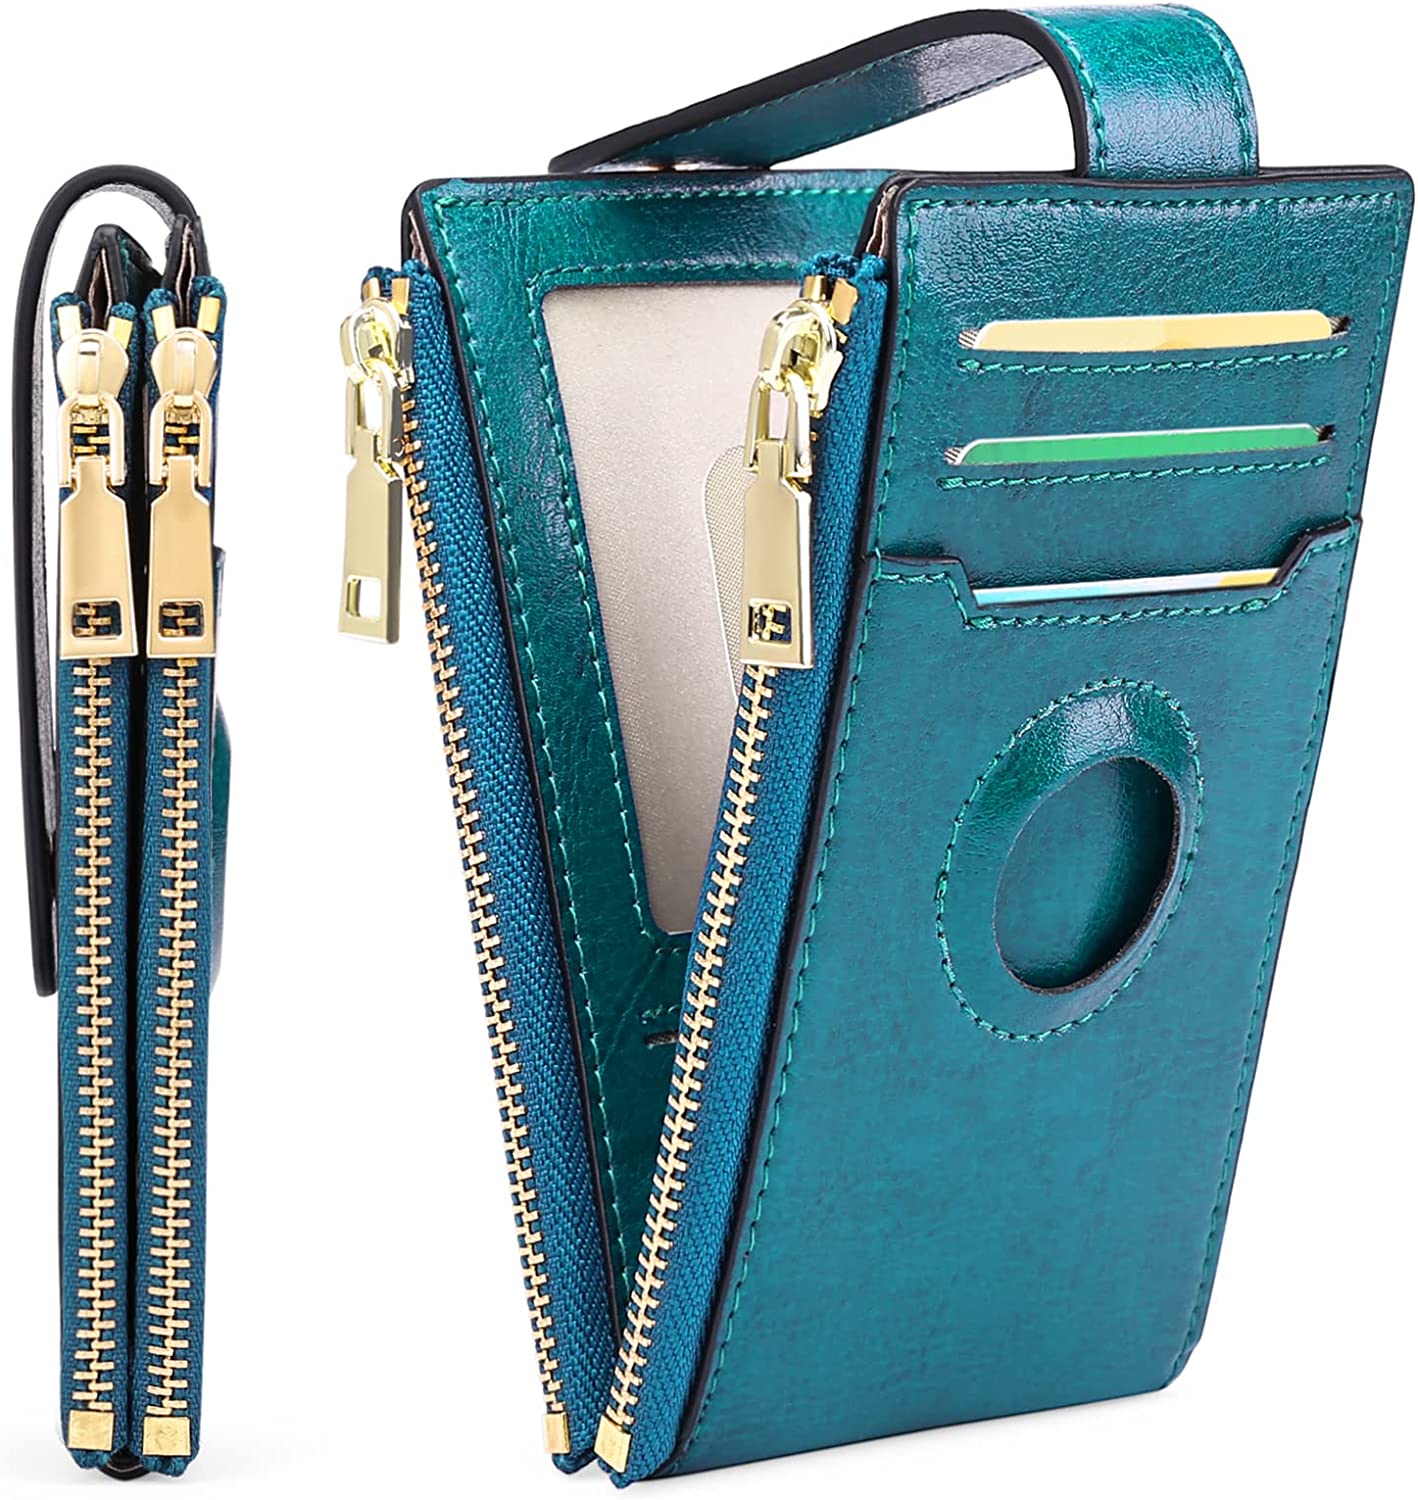 FALAN MULE Women's Wallet Genuine Leather RFID Blocking Large